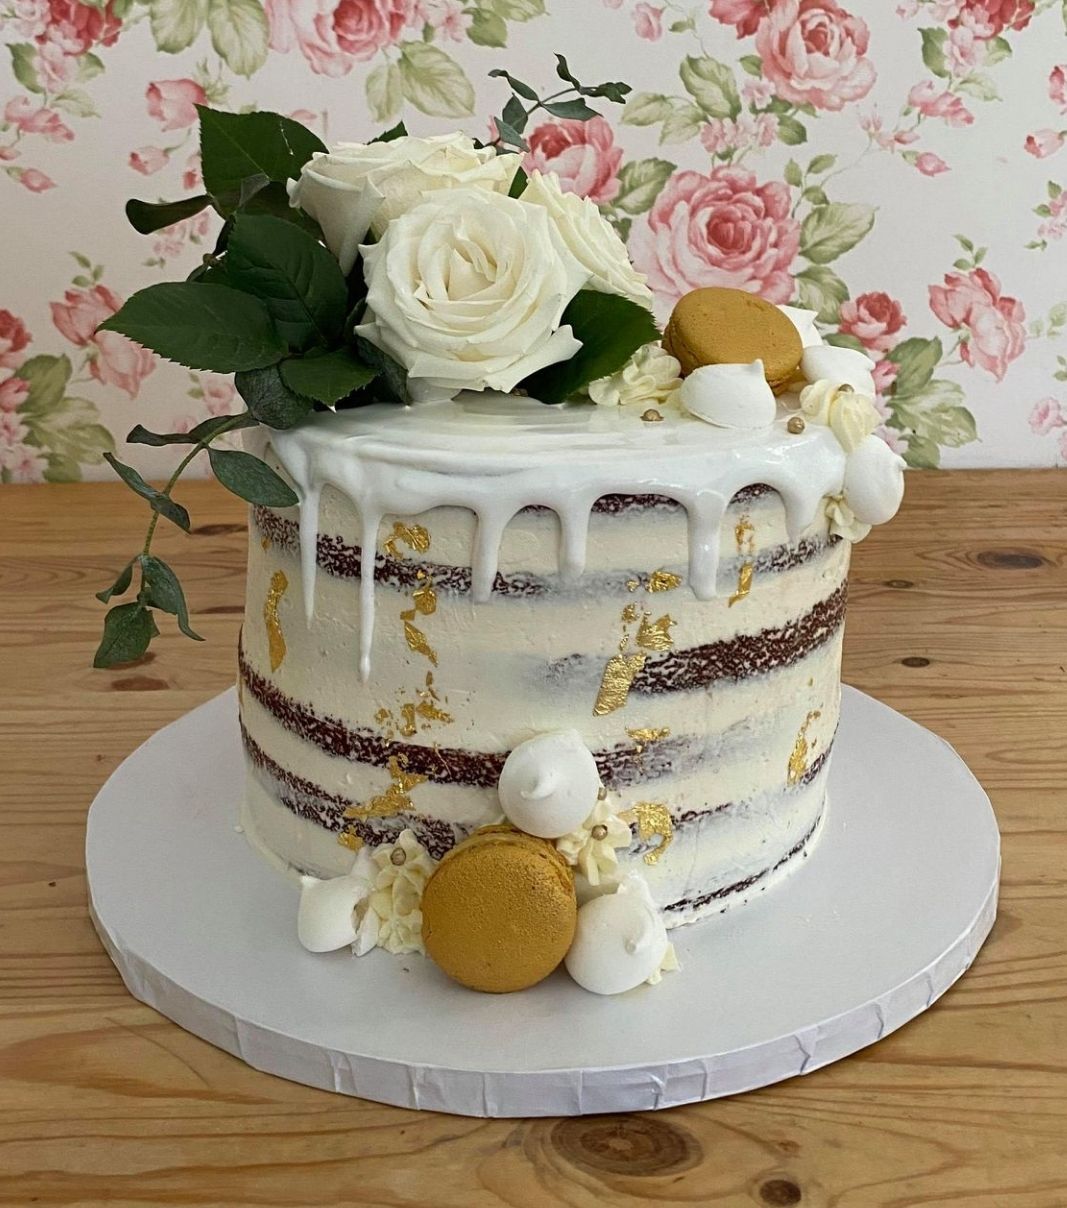 Gâteau d'anniversaire sur mesure: gâteau effet nu sali (naked) avec un coulis blanc et décoré de feuilles d'or et de fleurs fraîches.